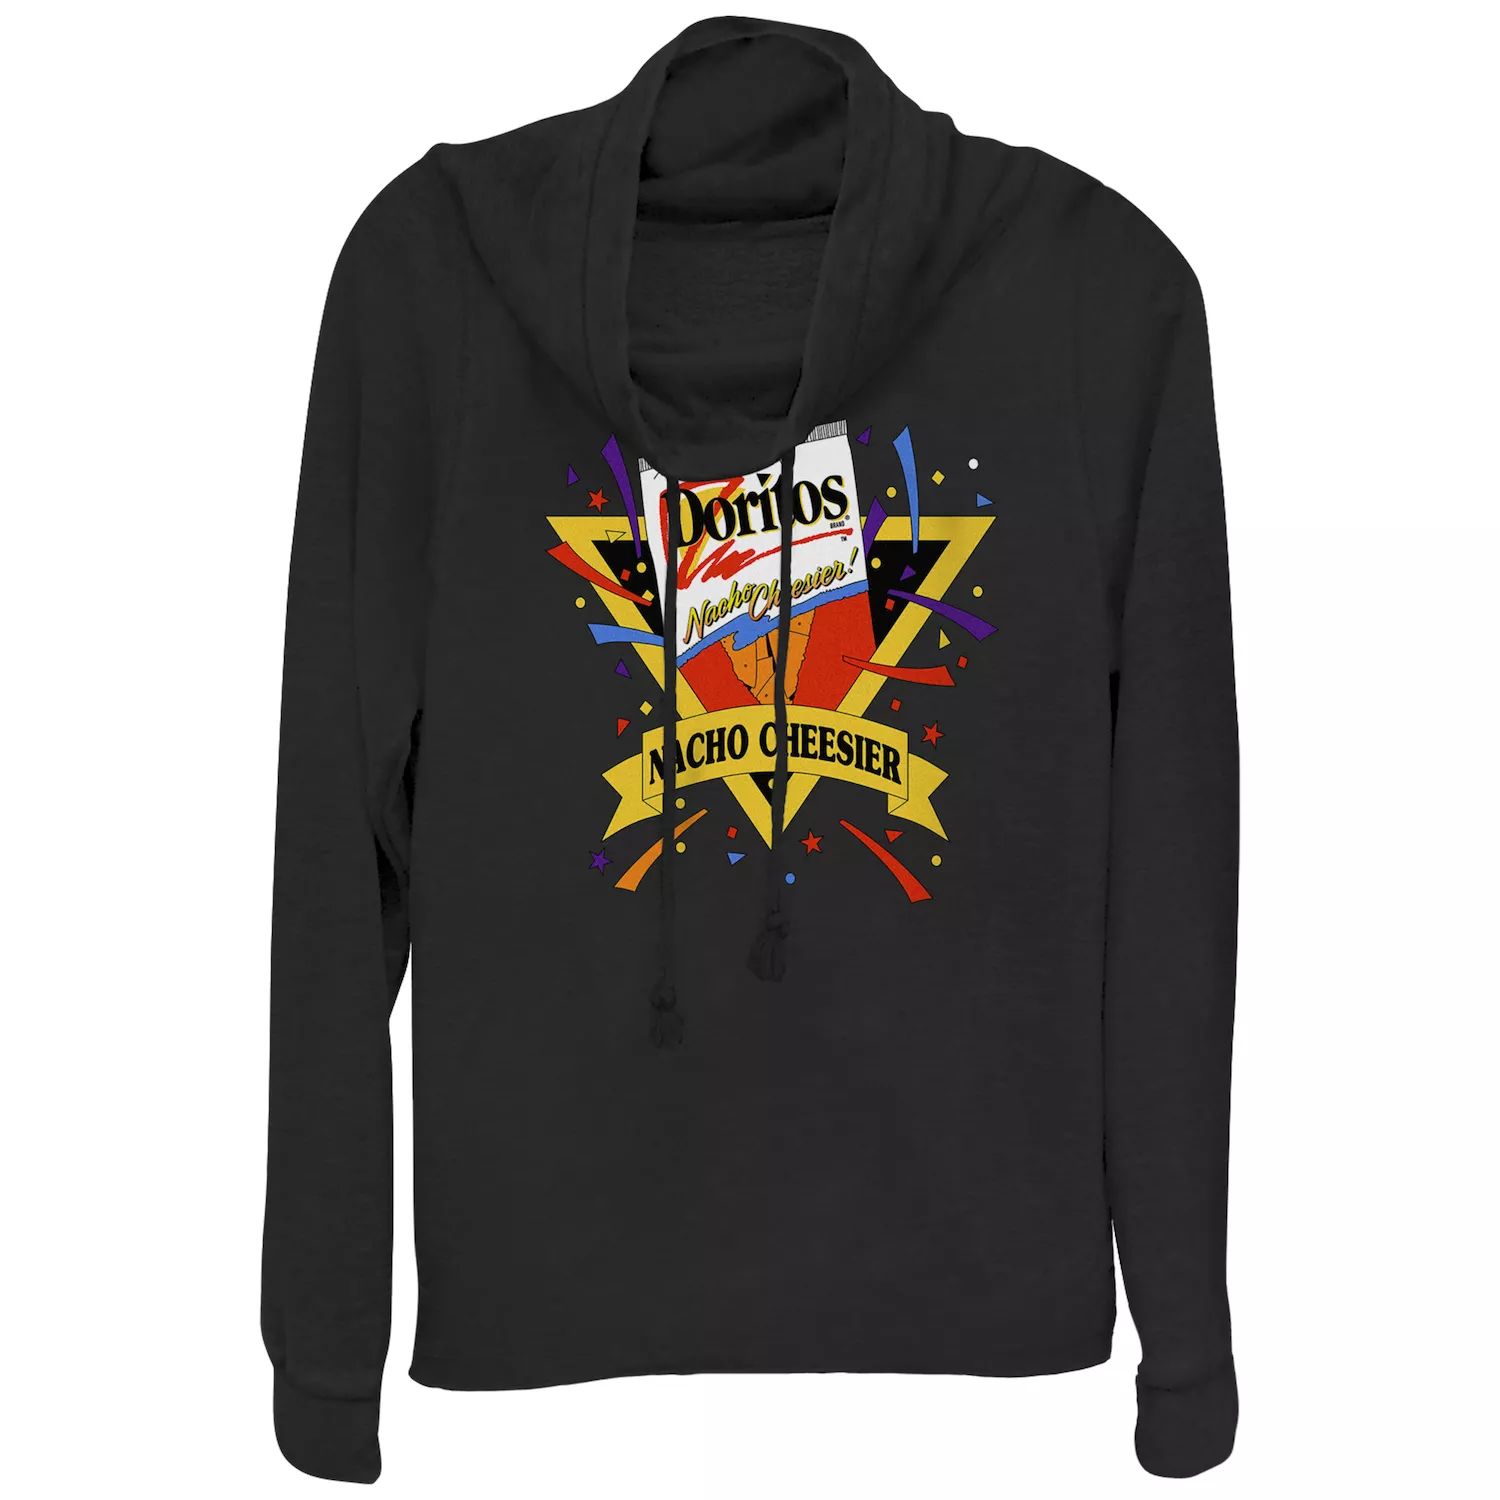 Пуловер с воротником-хомутом и винтажным логотипом Doritos Nacho Cheesier для юниоров Doritos doritos dinamita flamin hot 40 gm